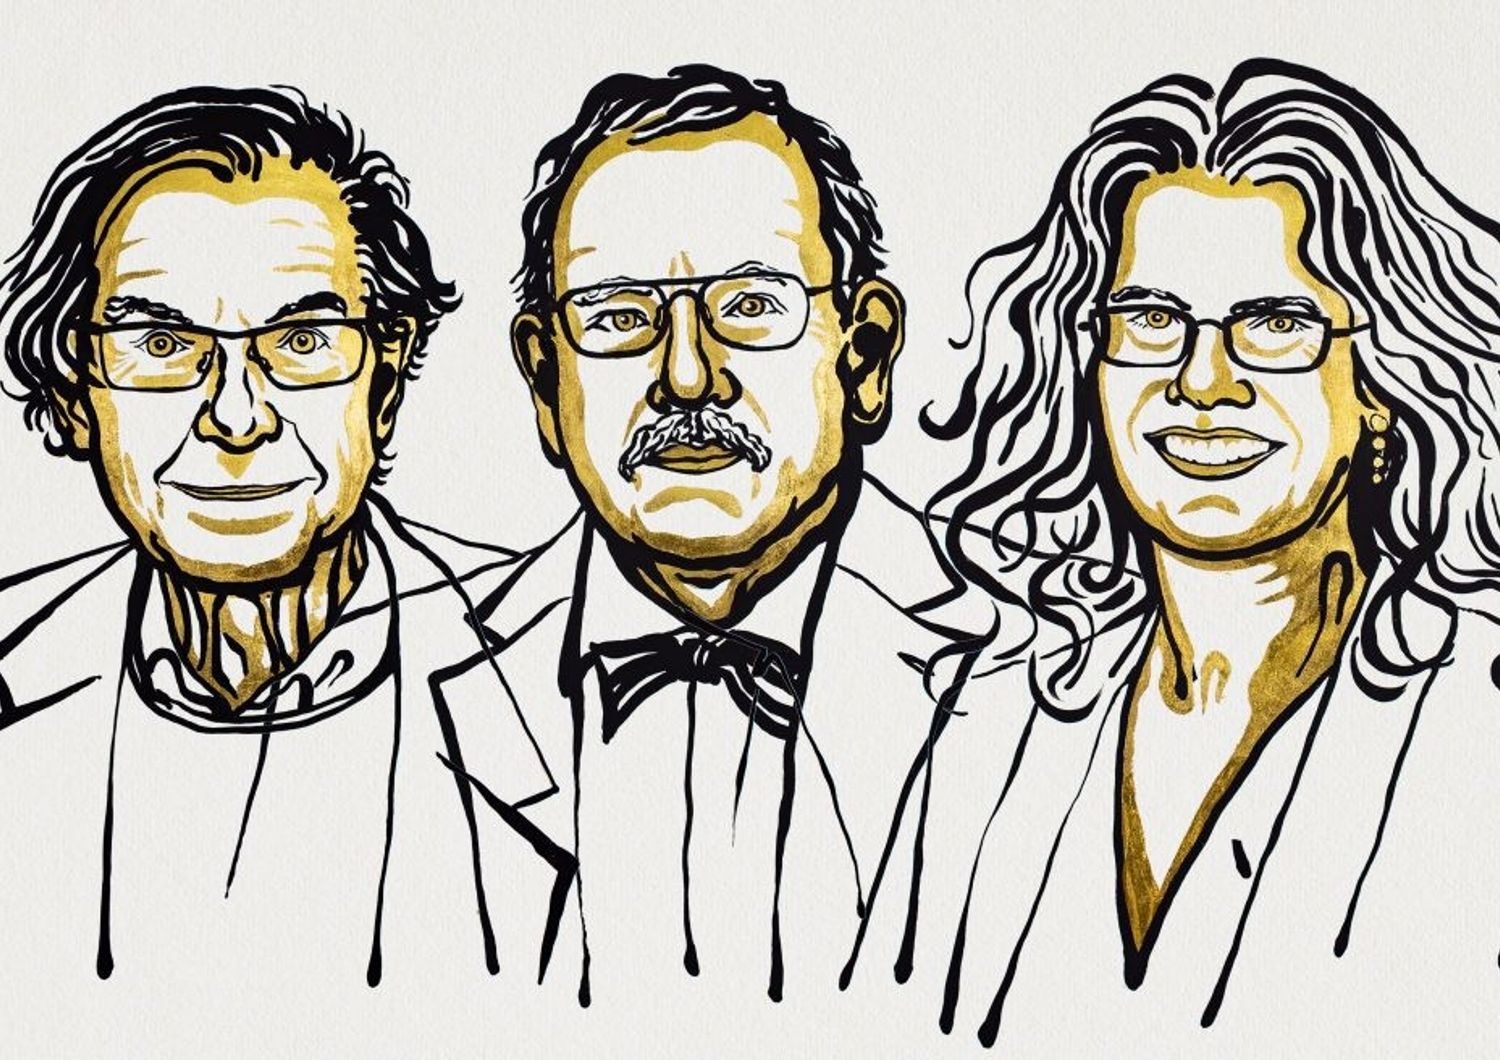 Roger Penrose, Reinhard Genzel e Andrea Ghez nel ritratto pubblicato sul sito ufficiale del premio Nobel